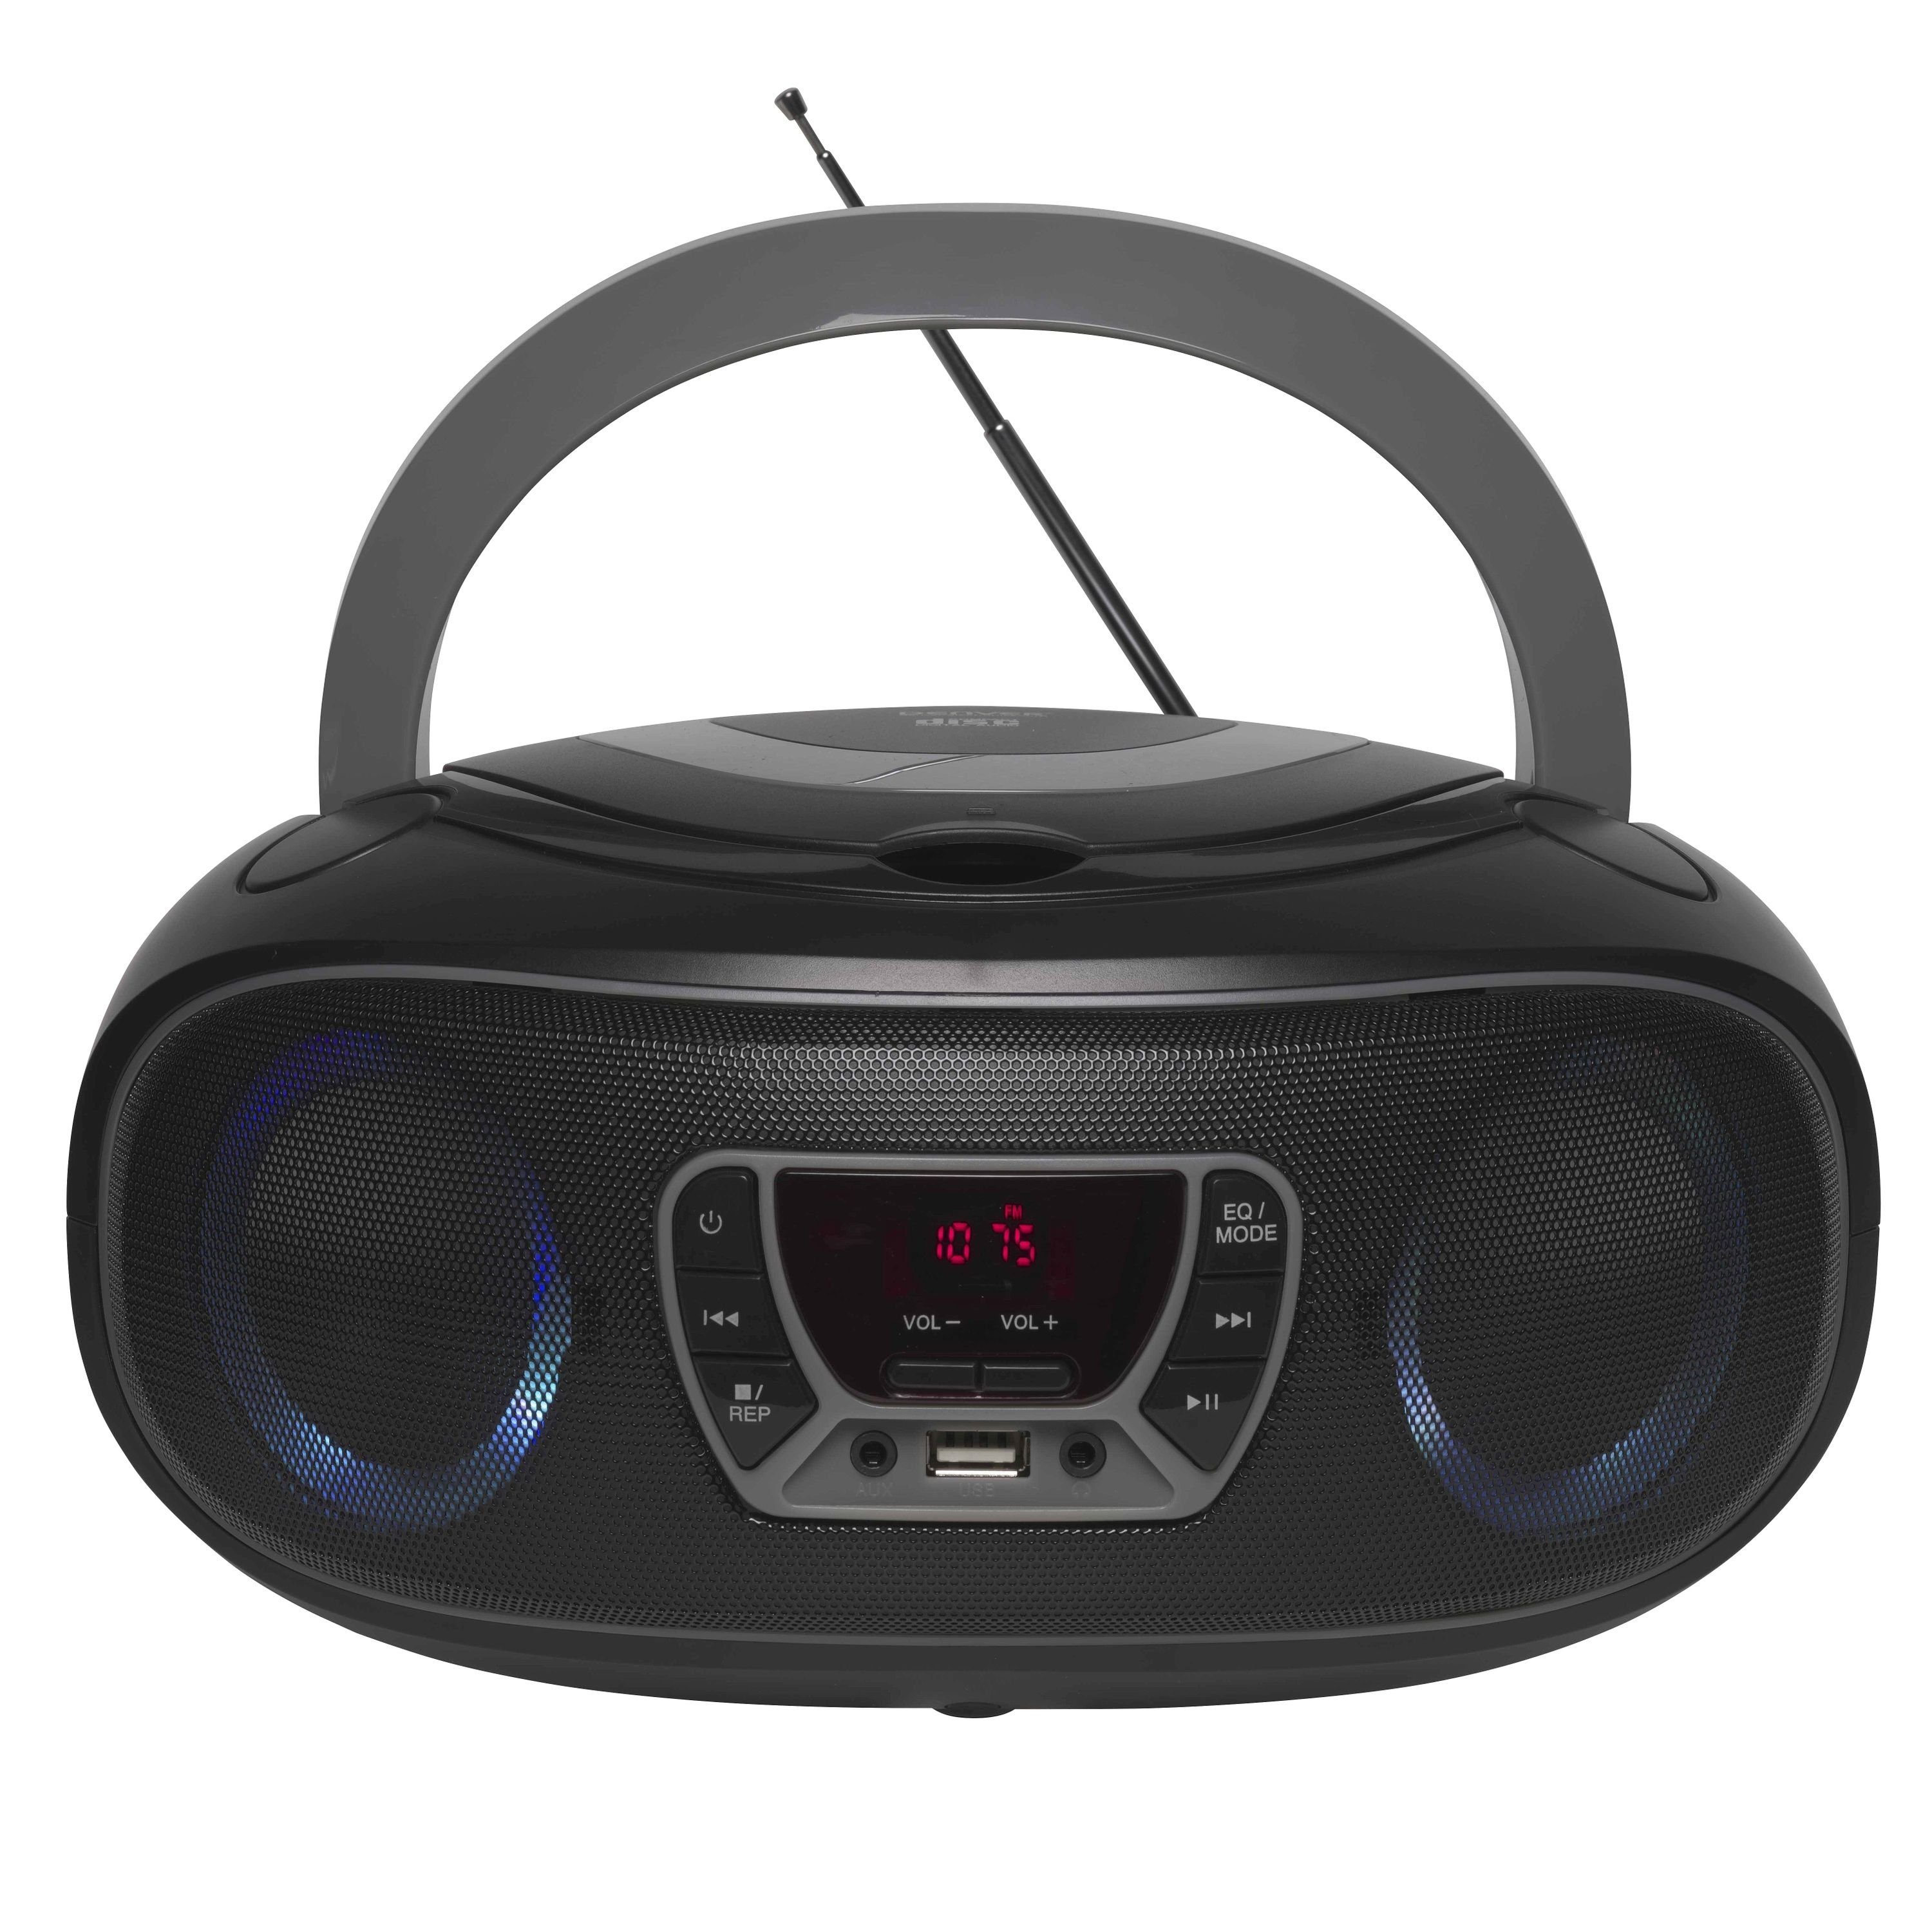 Denver TCL-212BT GREY Boombox (UKW Radio, Bluetooth, USB, AUX-IN, Kopfhörerausgang und LED Partylicht) Grau | CD-Radiorecorder